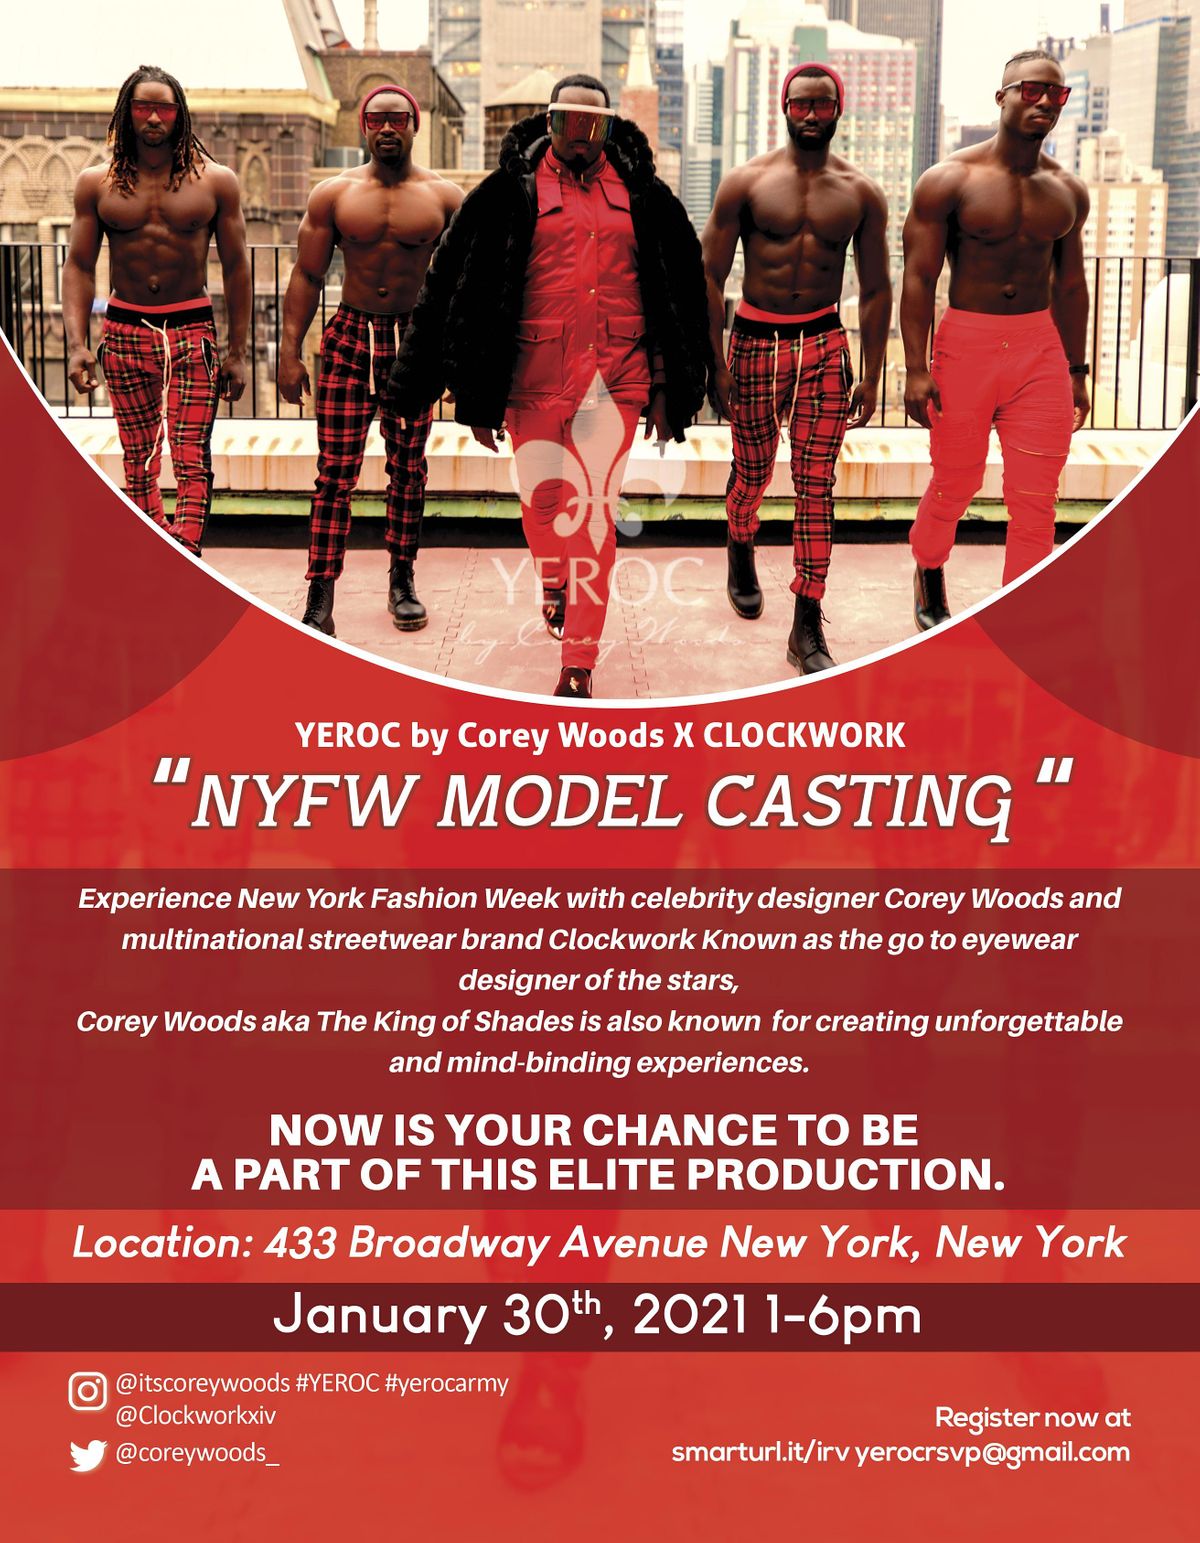 NY Fashion Week Model Casting for Celebrity Designer Corey Woods 433